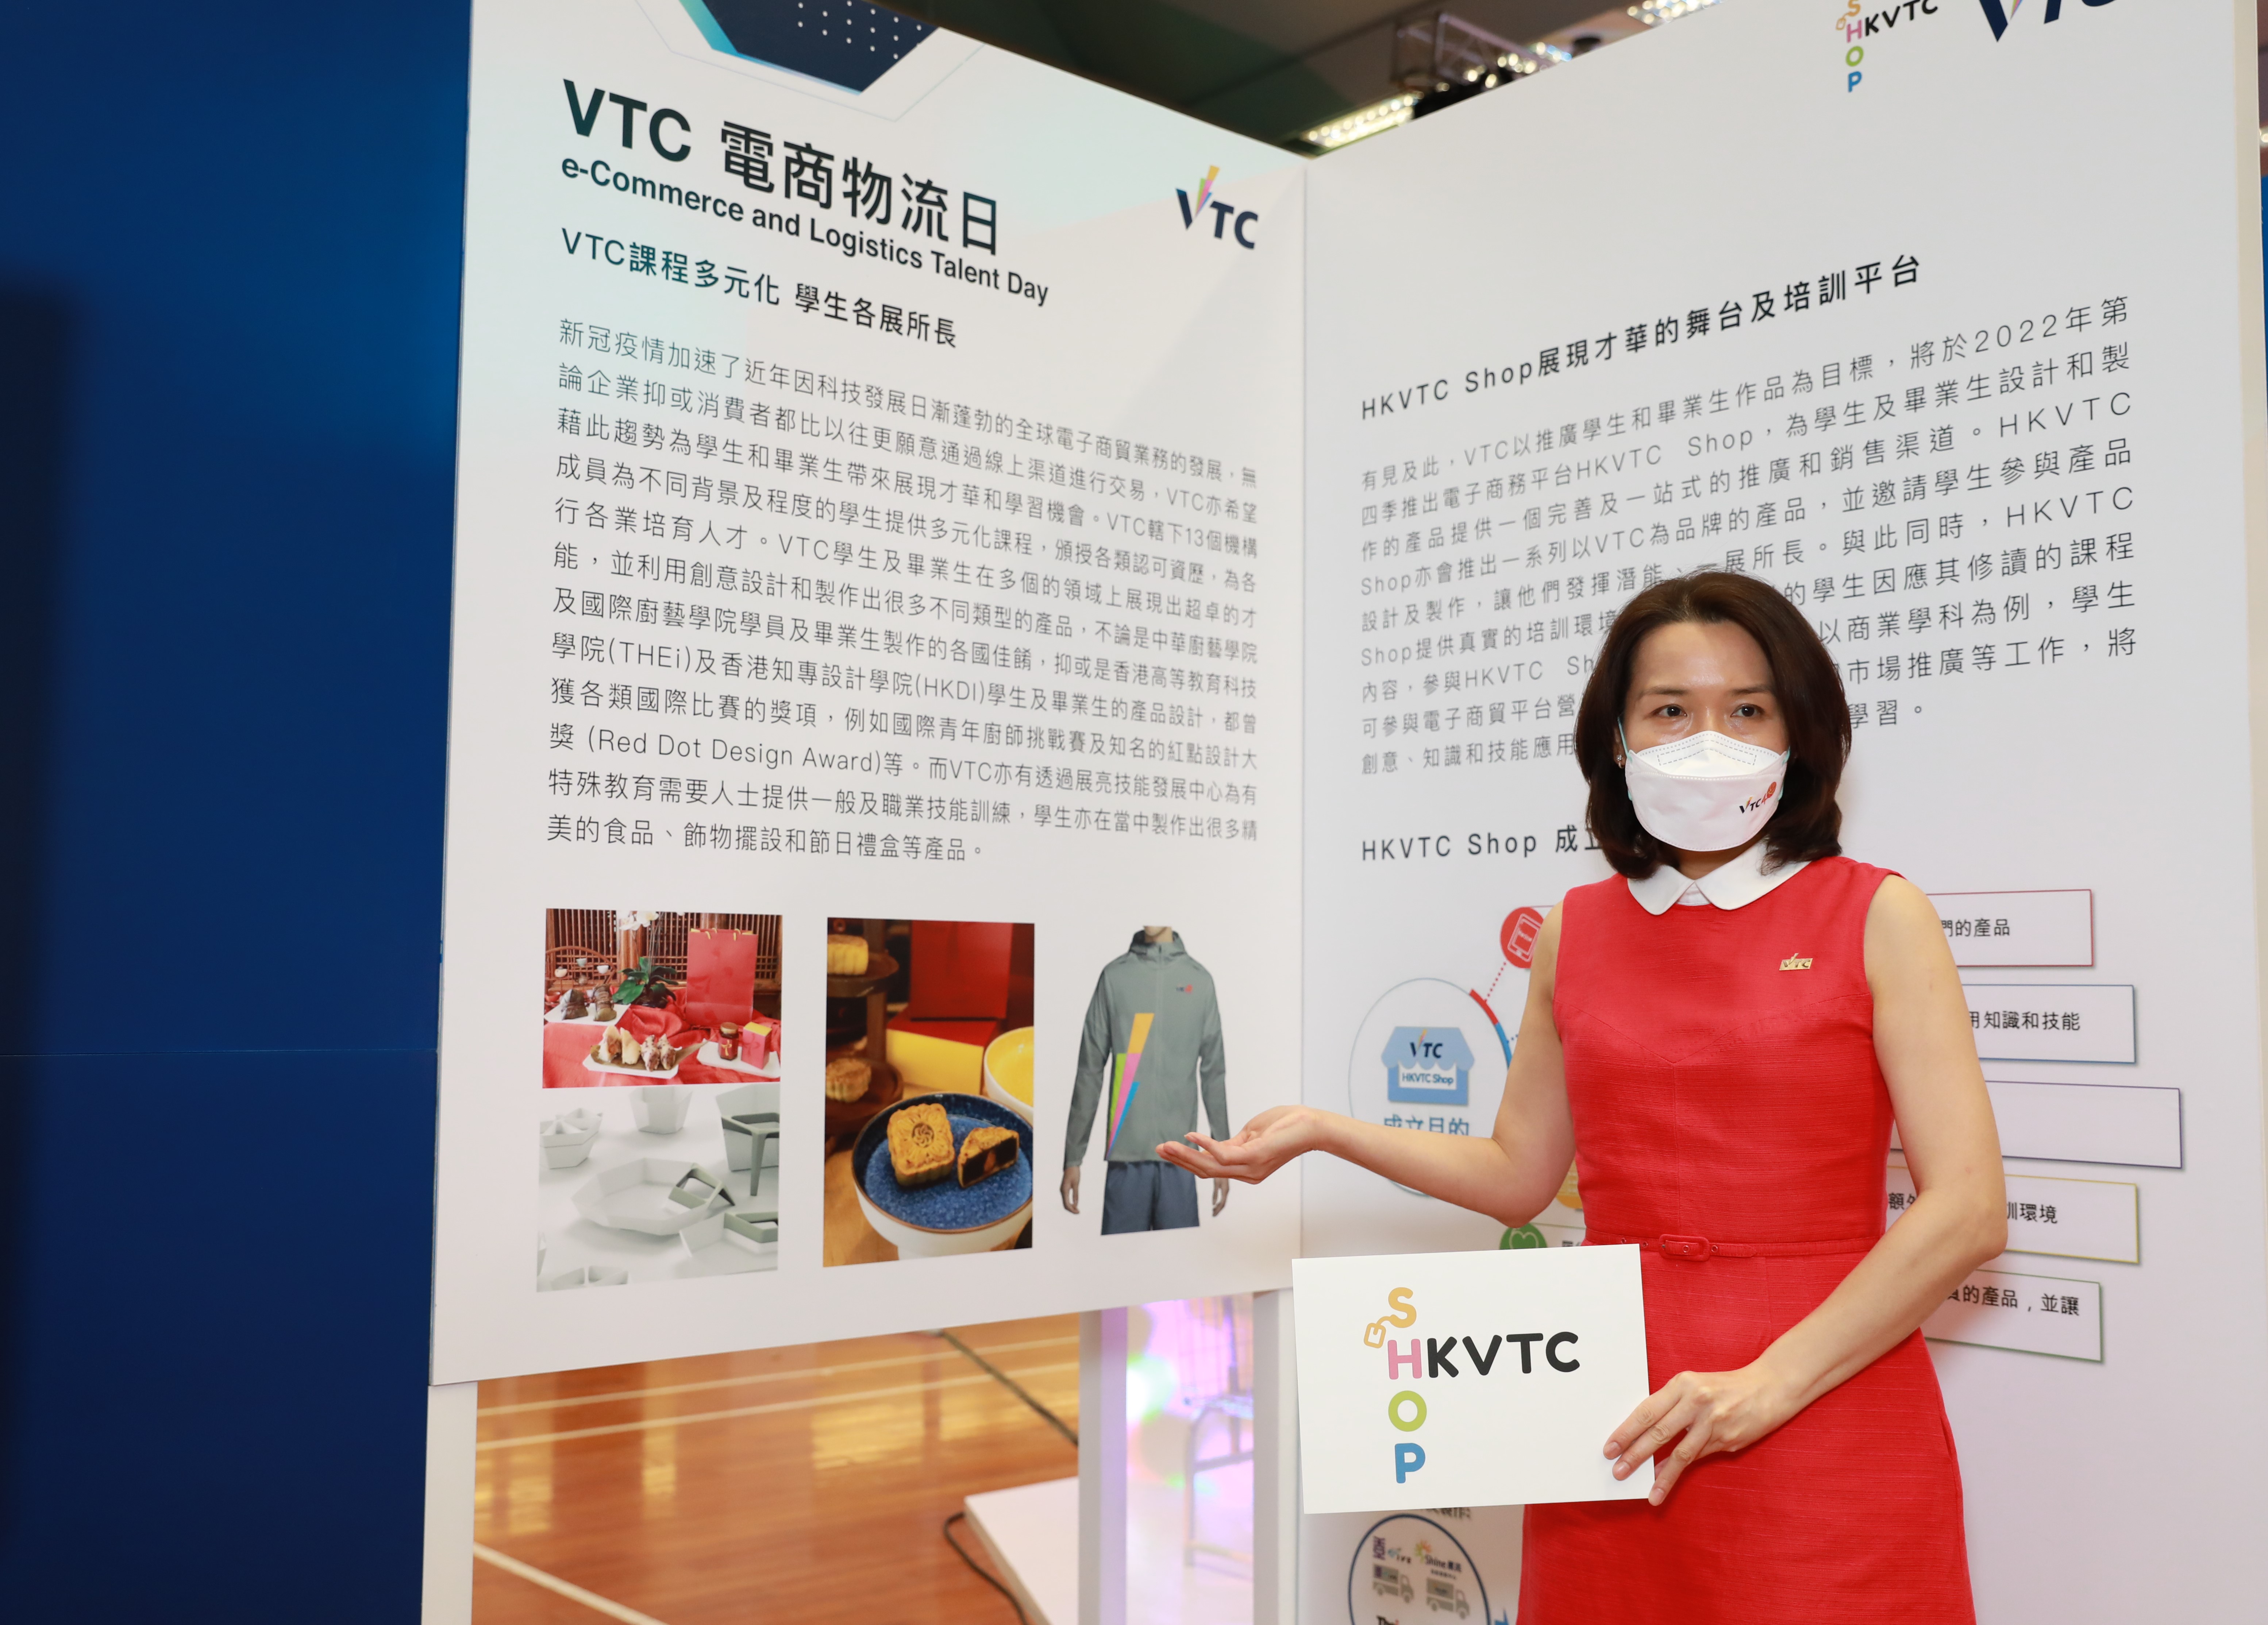 職業訓練局副執行幹事沈朝暉女士表示，VTC希望藉著HKVTC Shop的成立，為學生和畢業生帶來展現才華和學習的機會